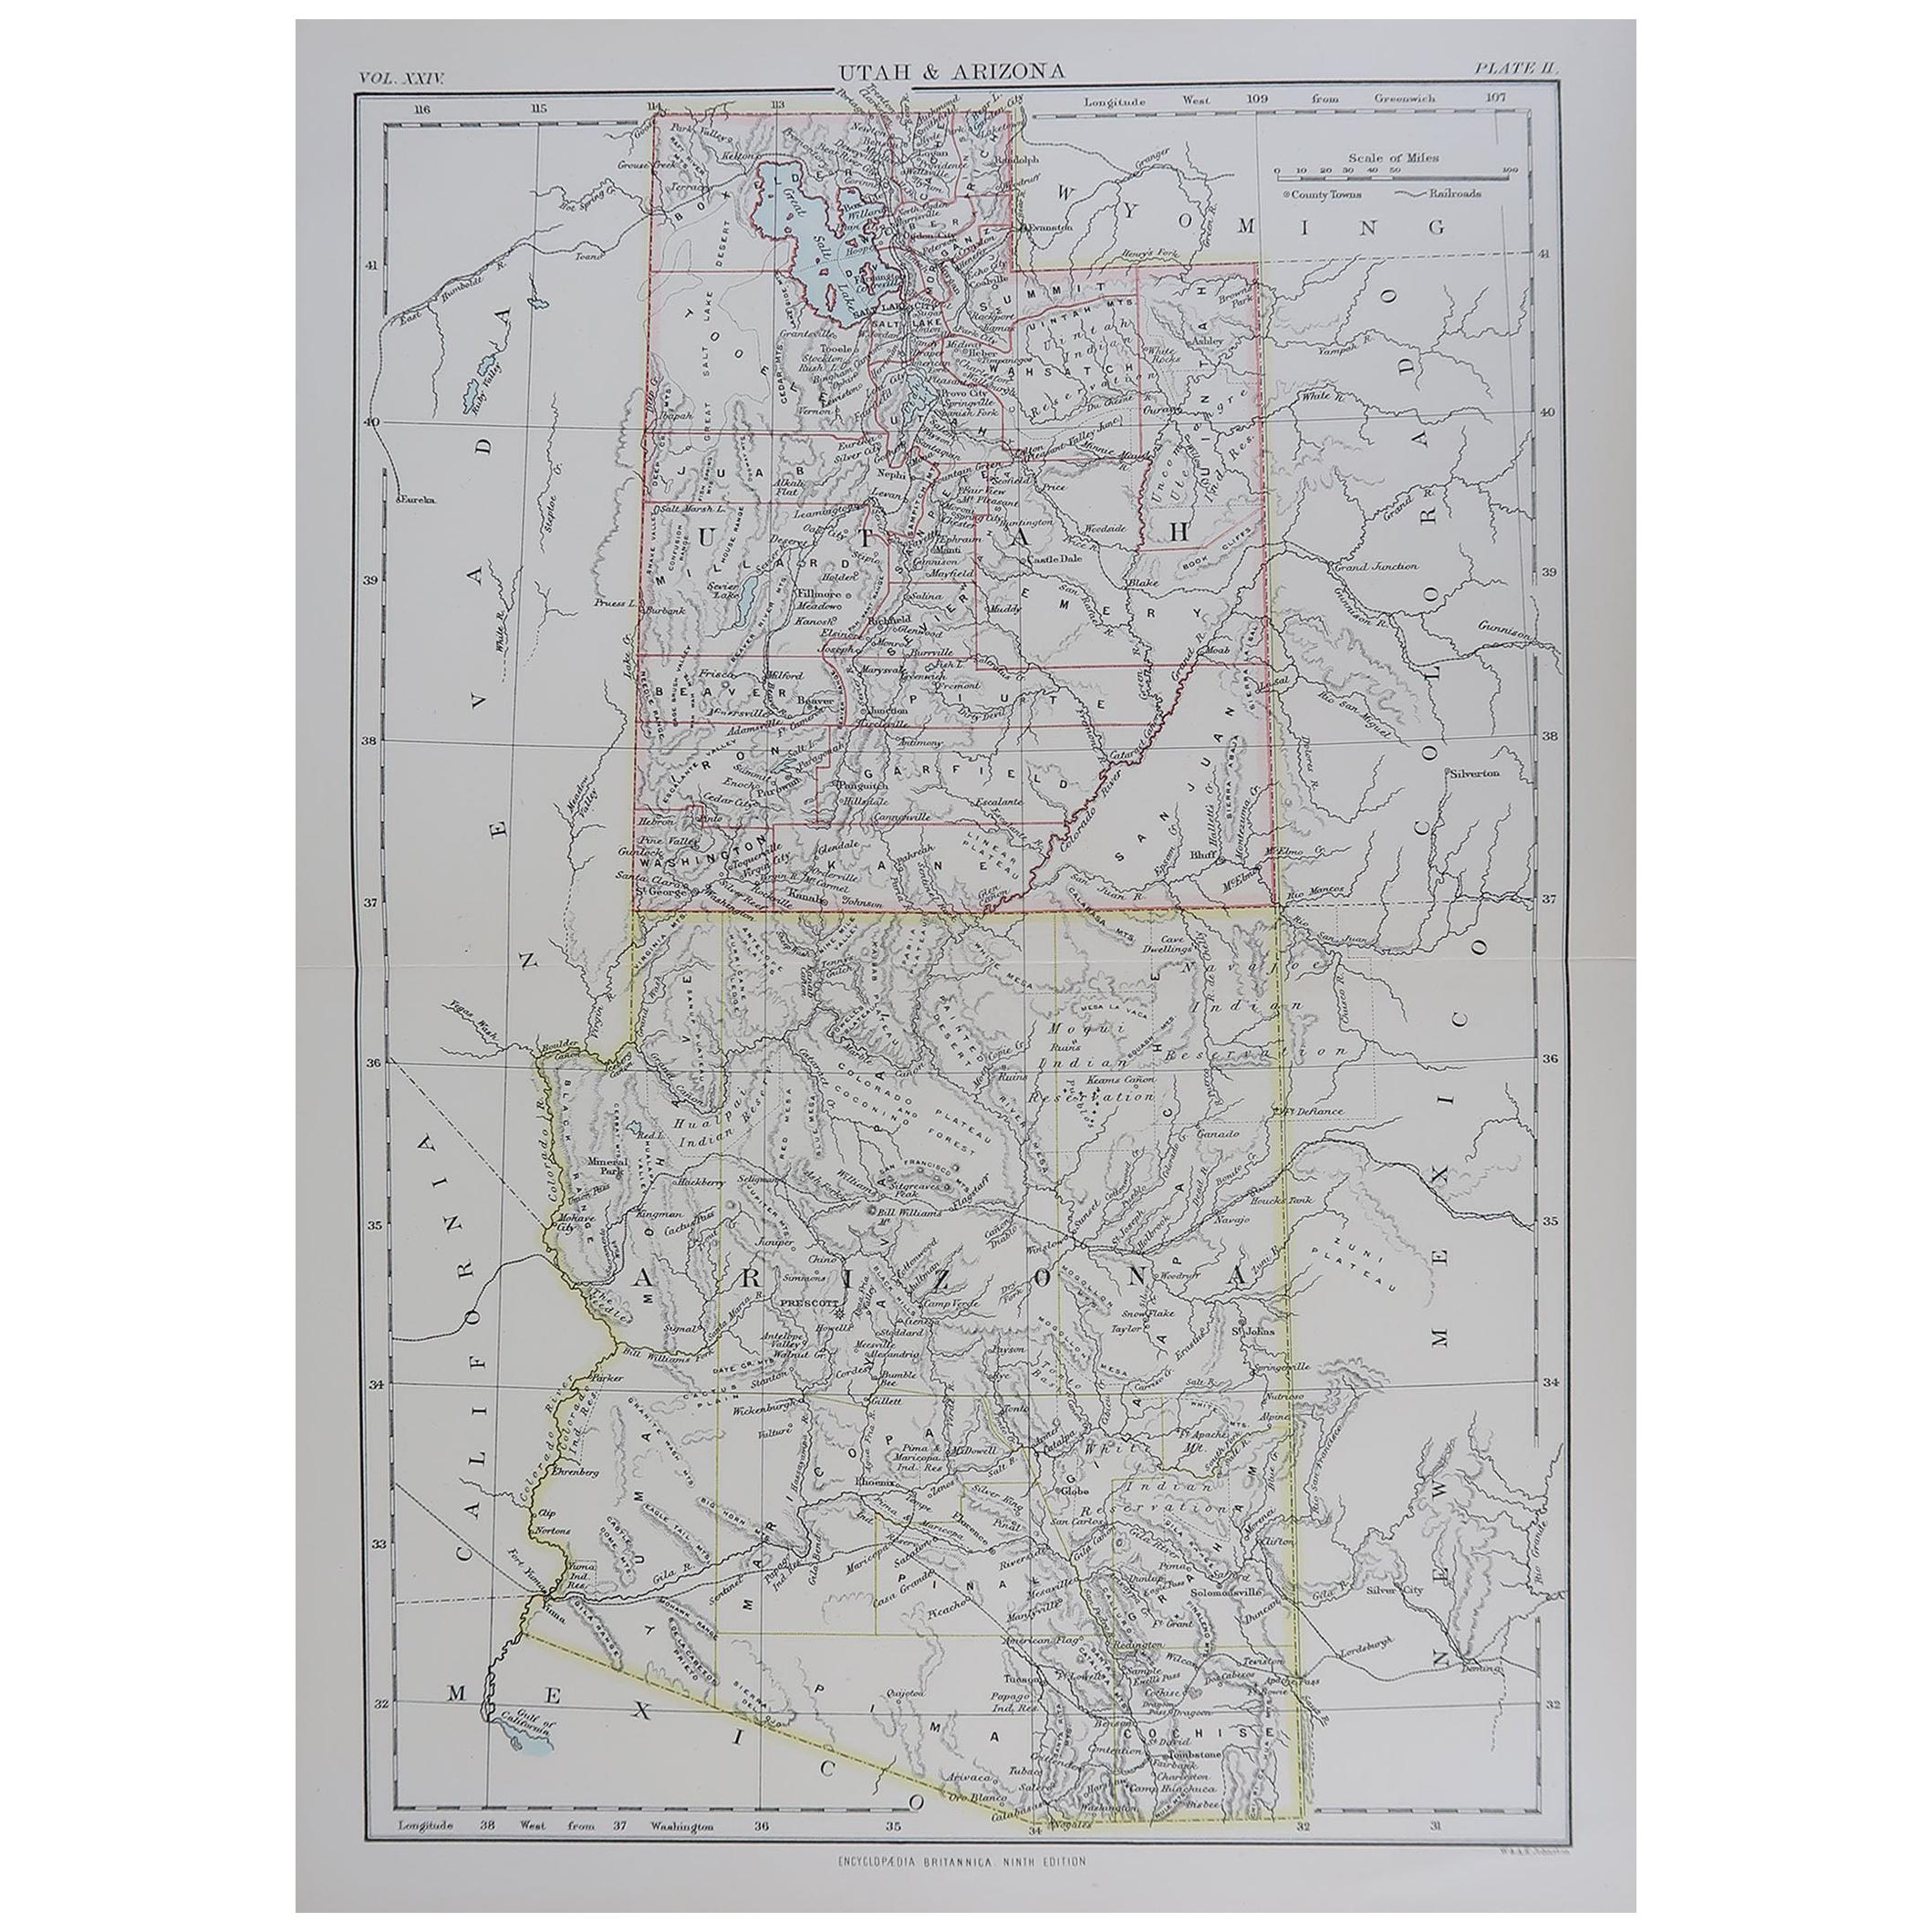 Original Antique Map of The American States of Utah & Arizona, 1889